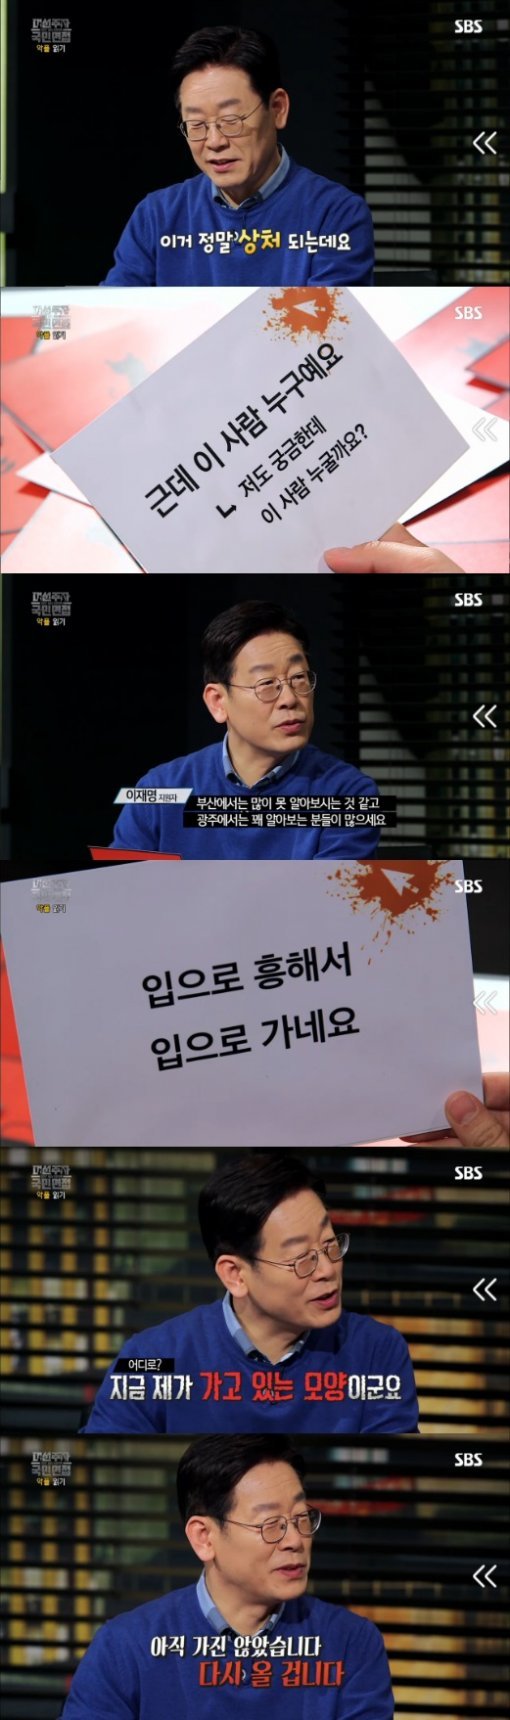 SBS ‘대선주자 국민면접‘ 캡처